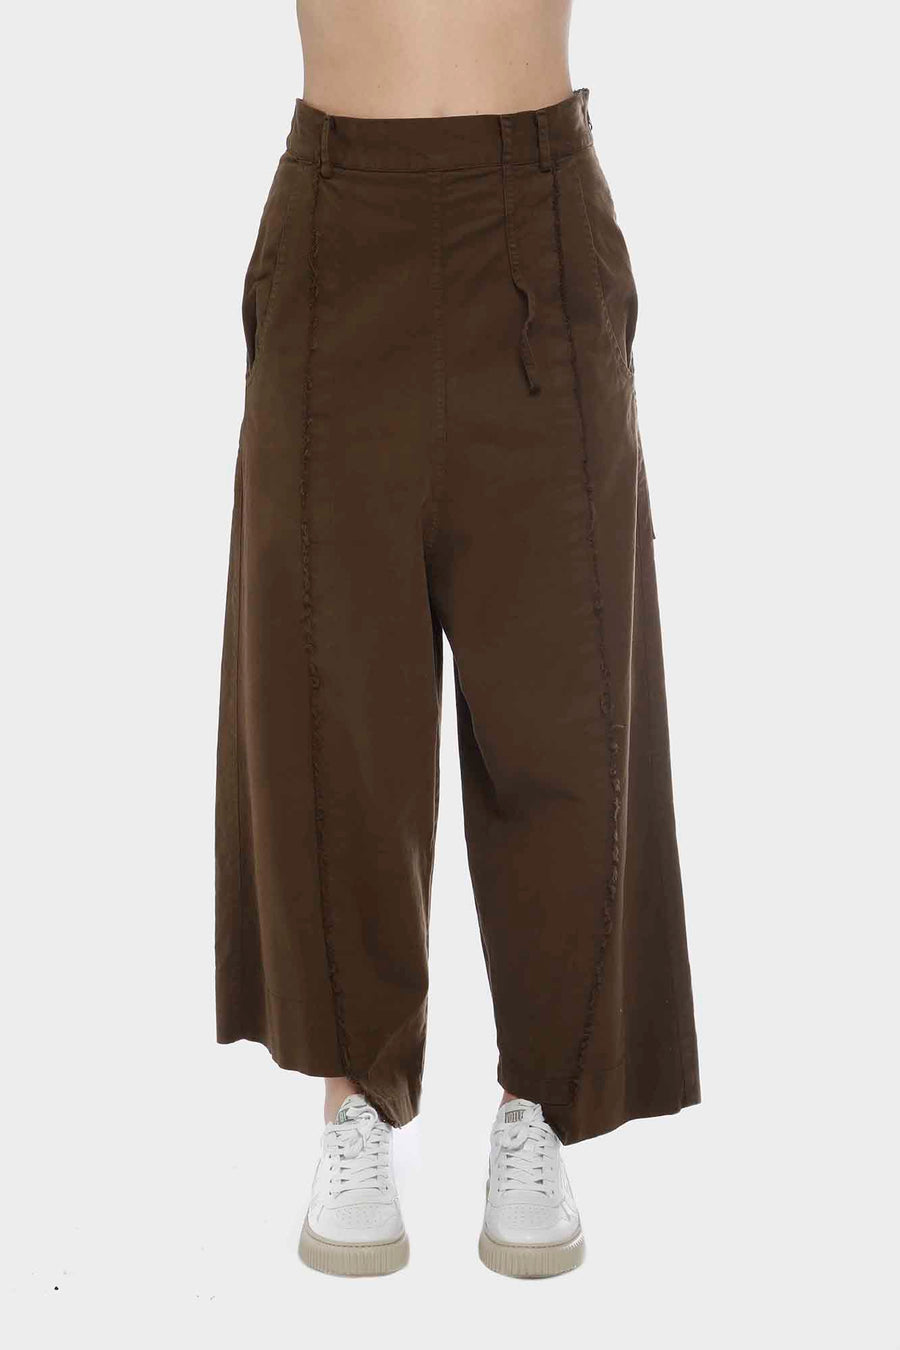 Pantalone Serie Numerica in cotone fango sn844